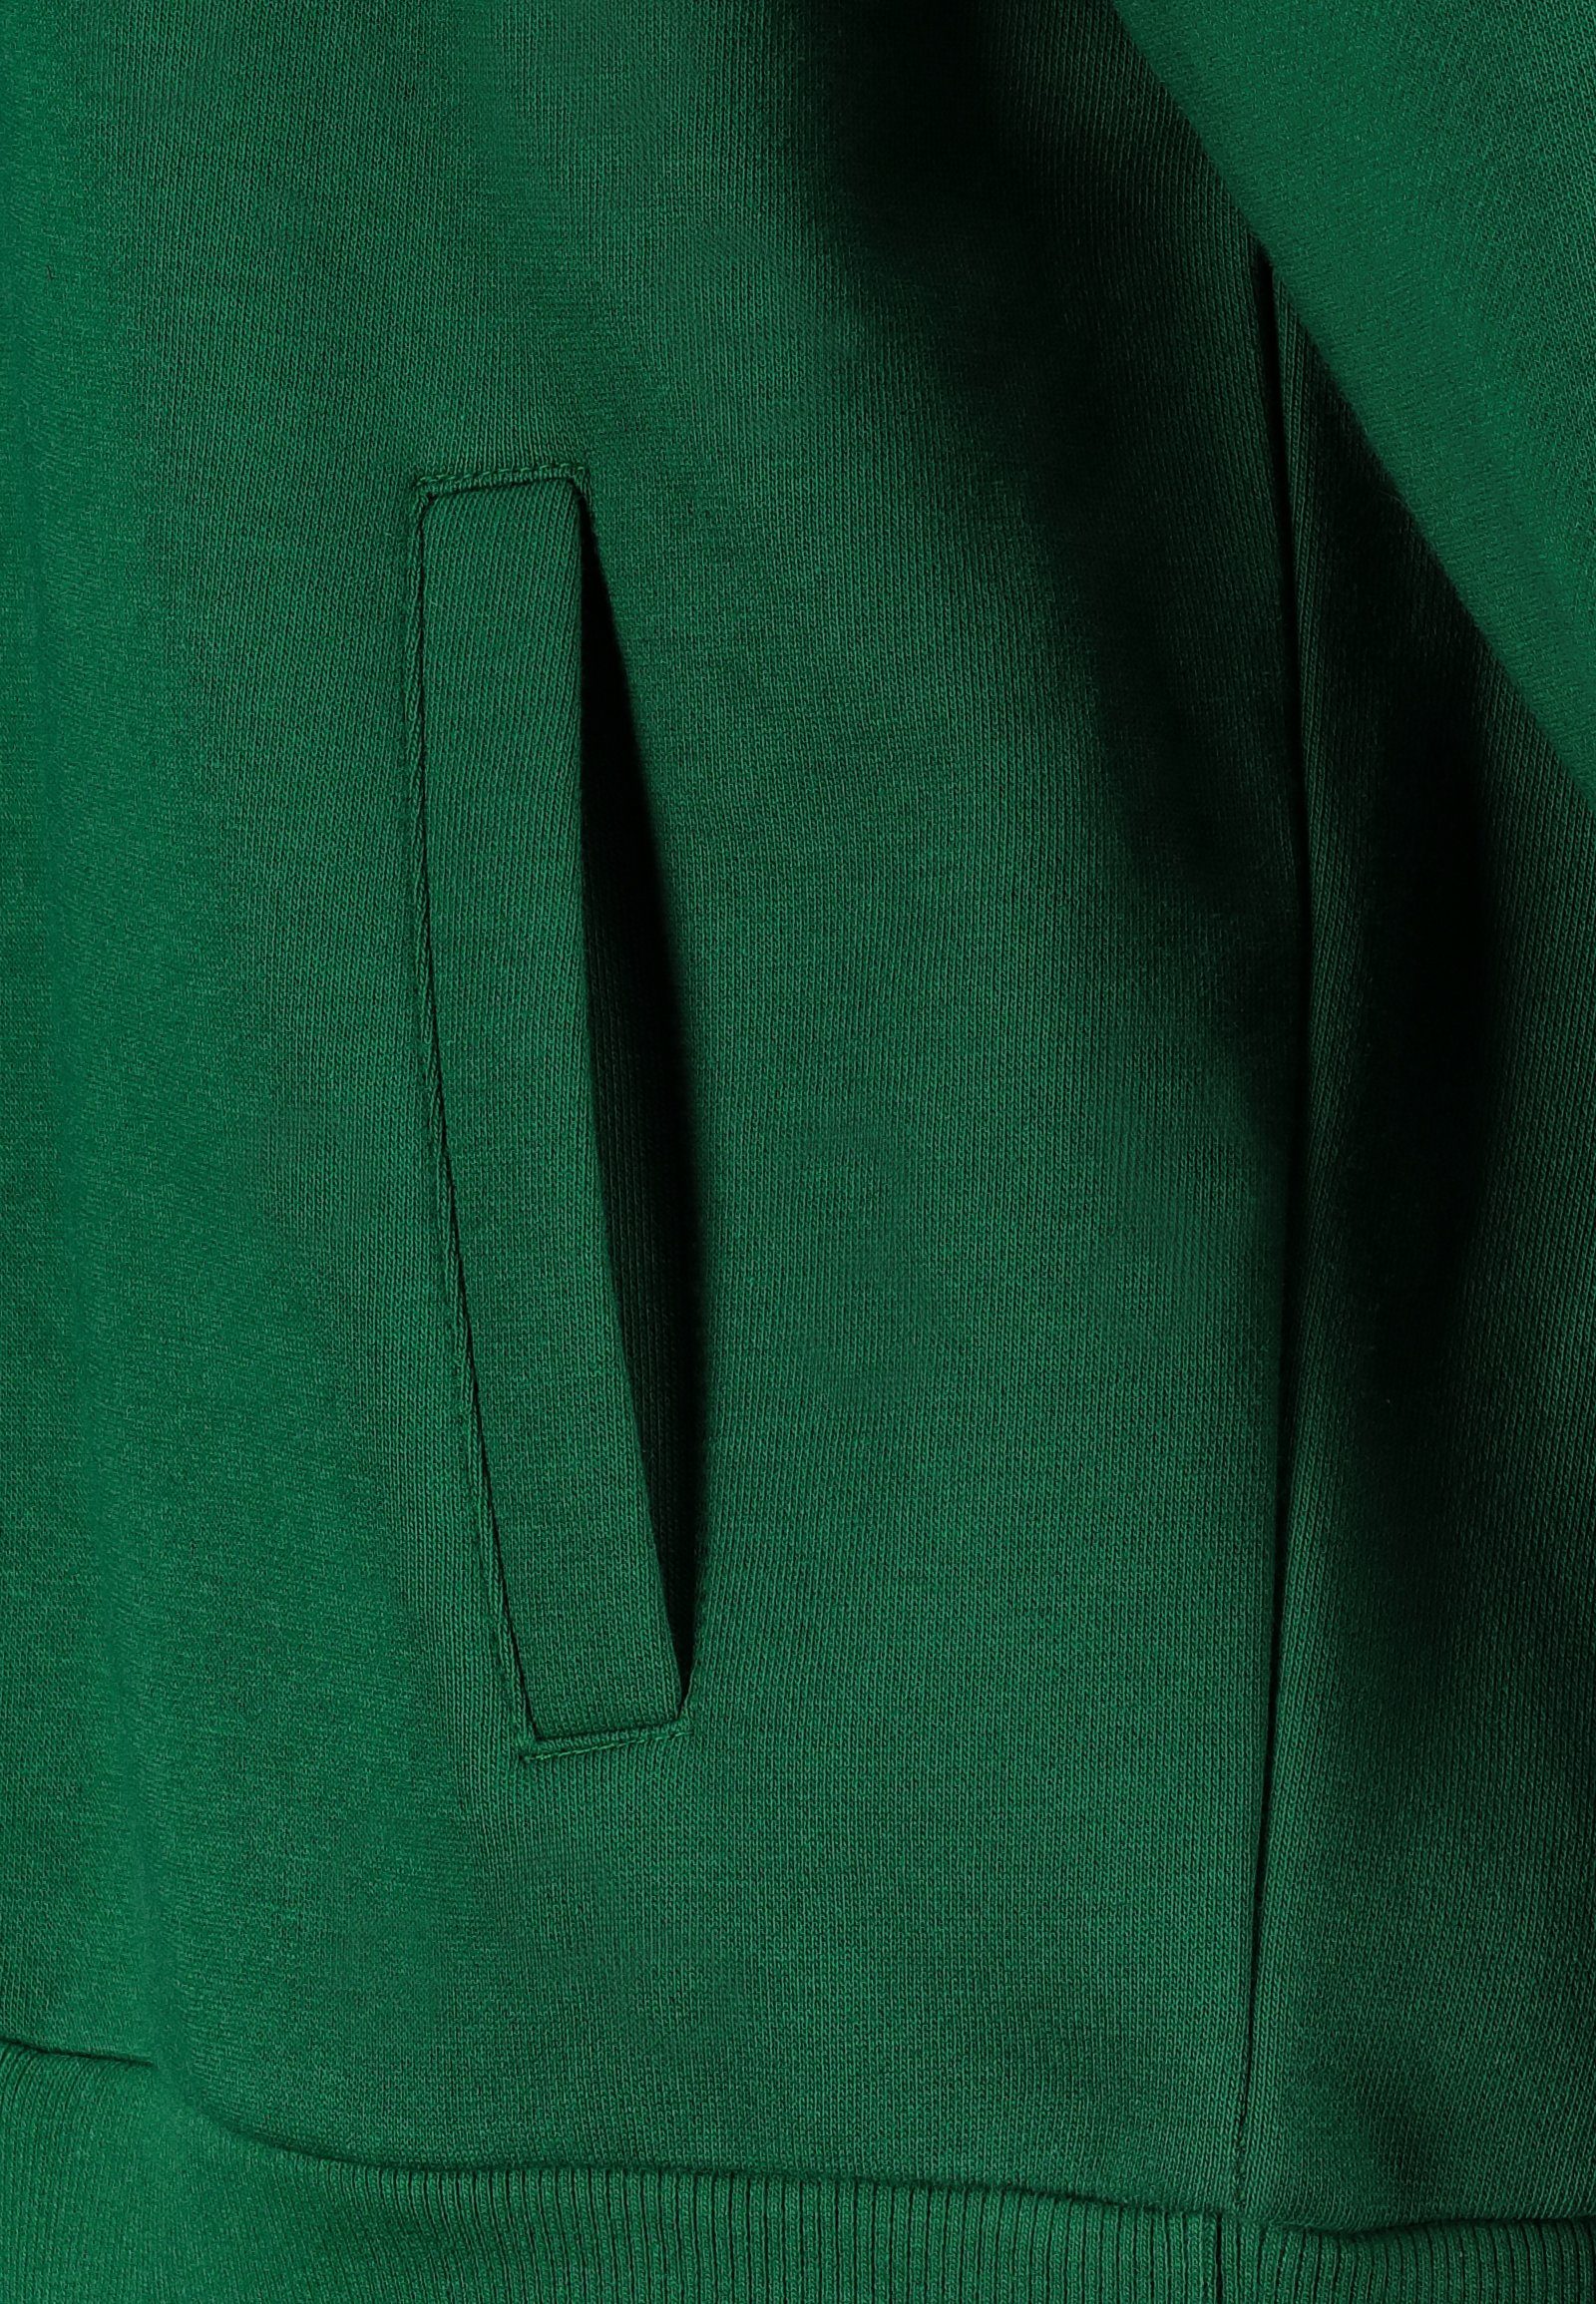 Print Stitch mit hinten Sweathoodie Eight2Nine & Soul dark-green Kapuzenpullover